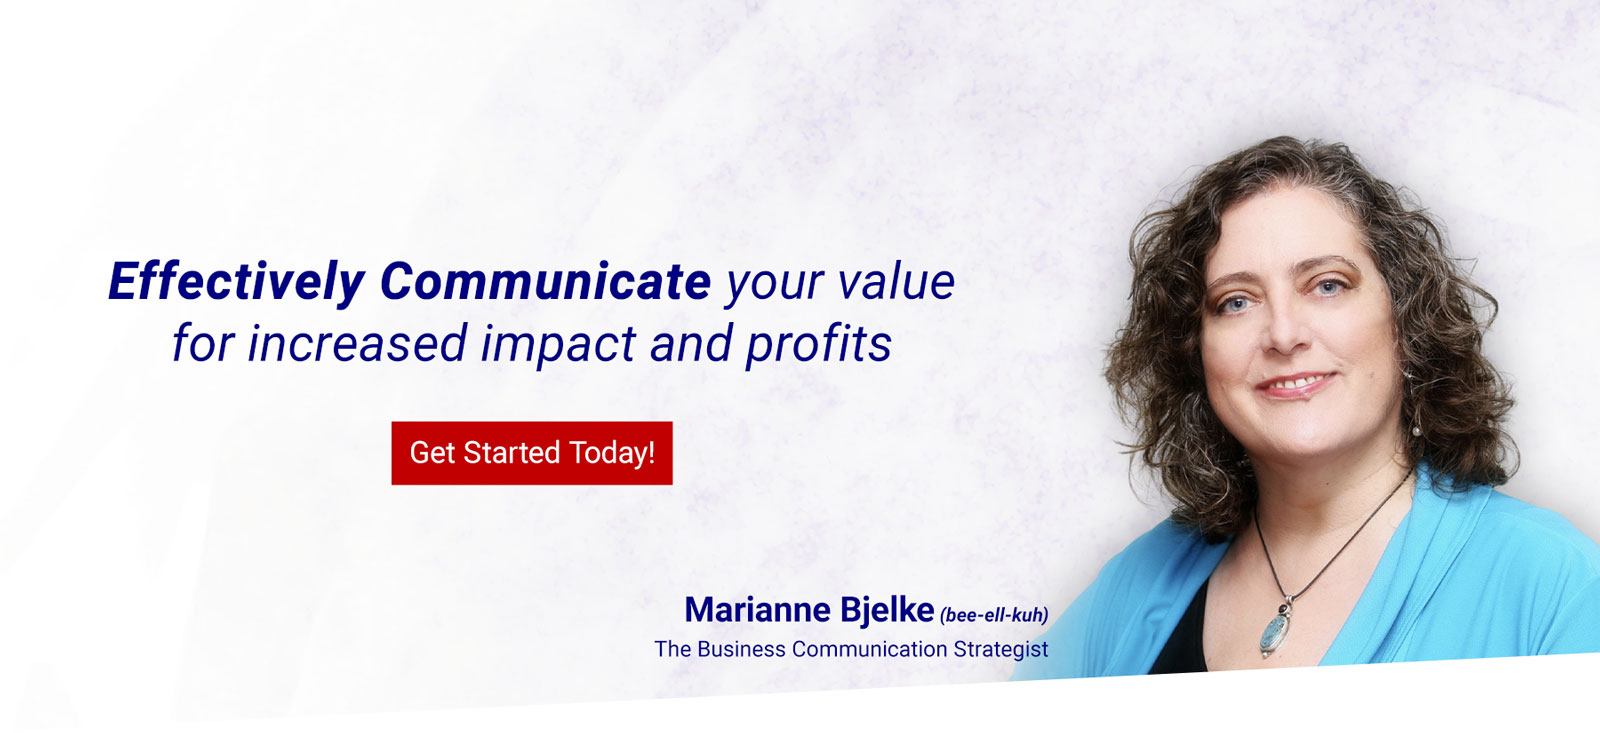 Marianne Bjelke ~ The Business Communication Strategist